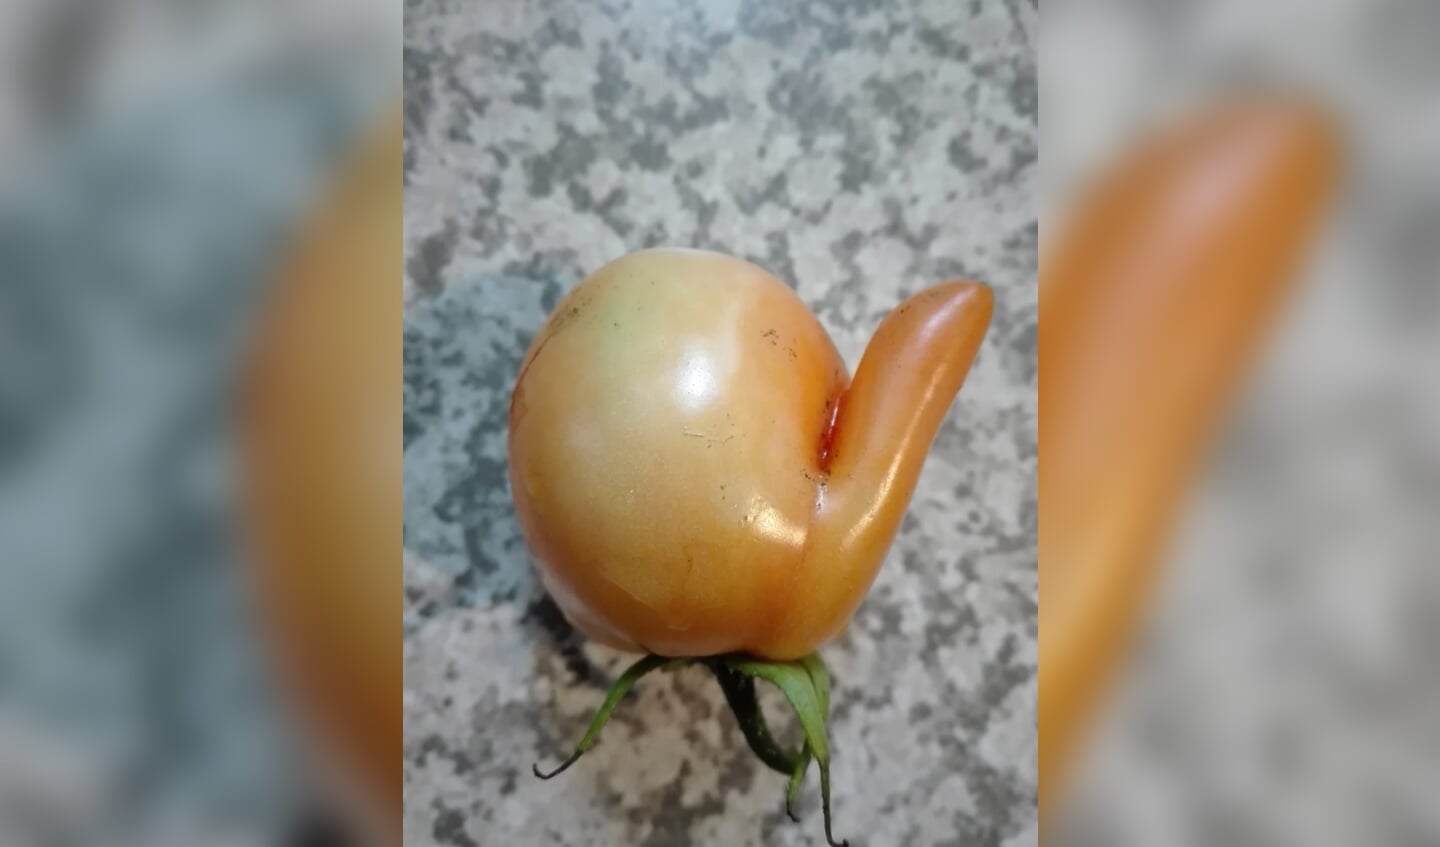 Dit is een vreemde tomaat!